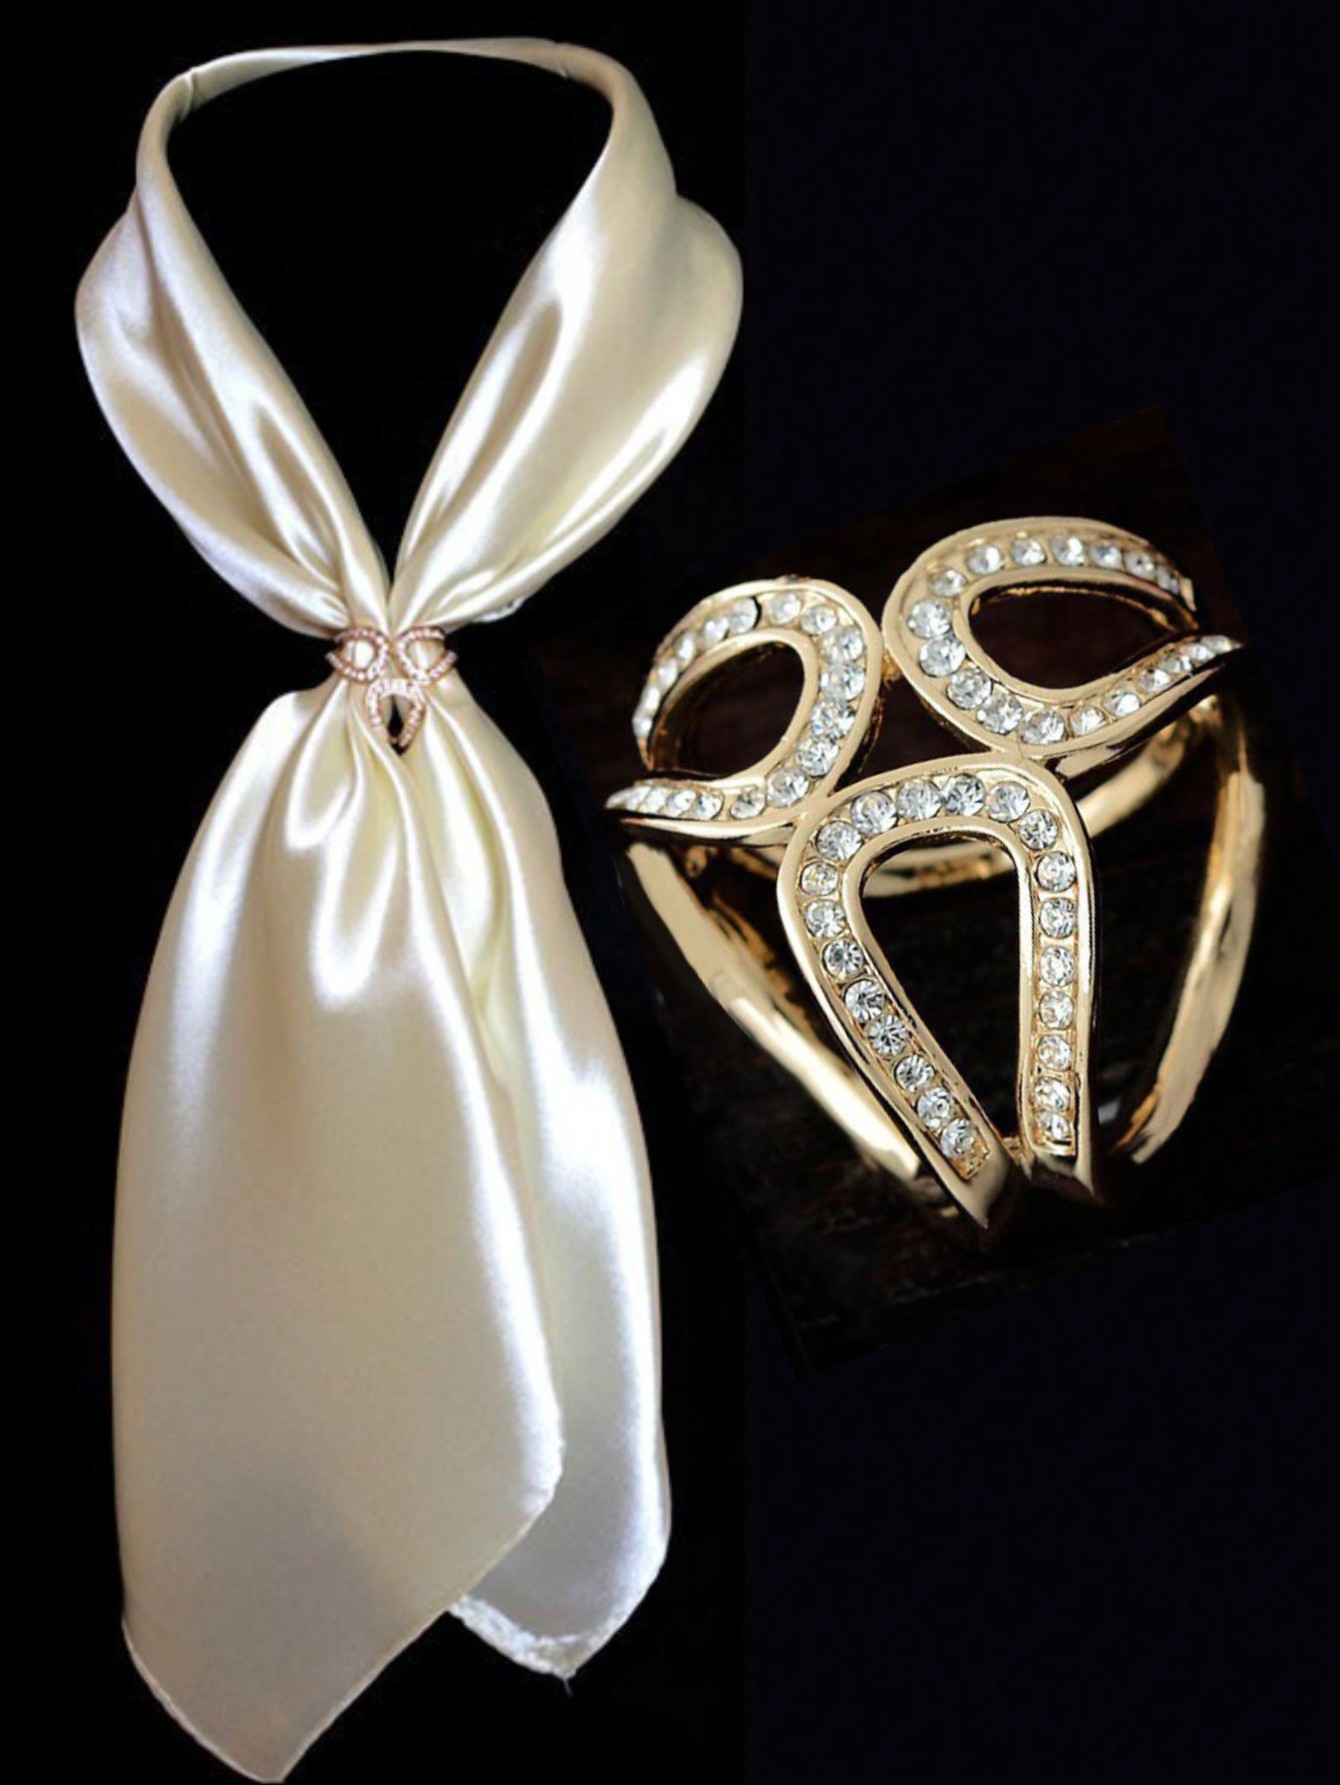 2 шт. женская пряжка на талии в форме сердца, золото